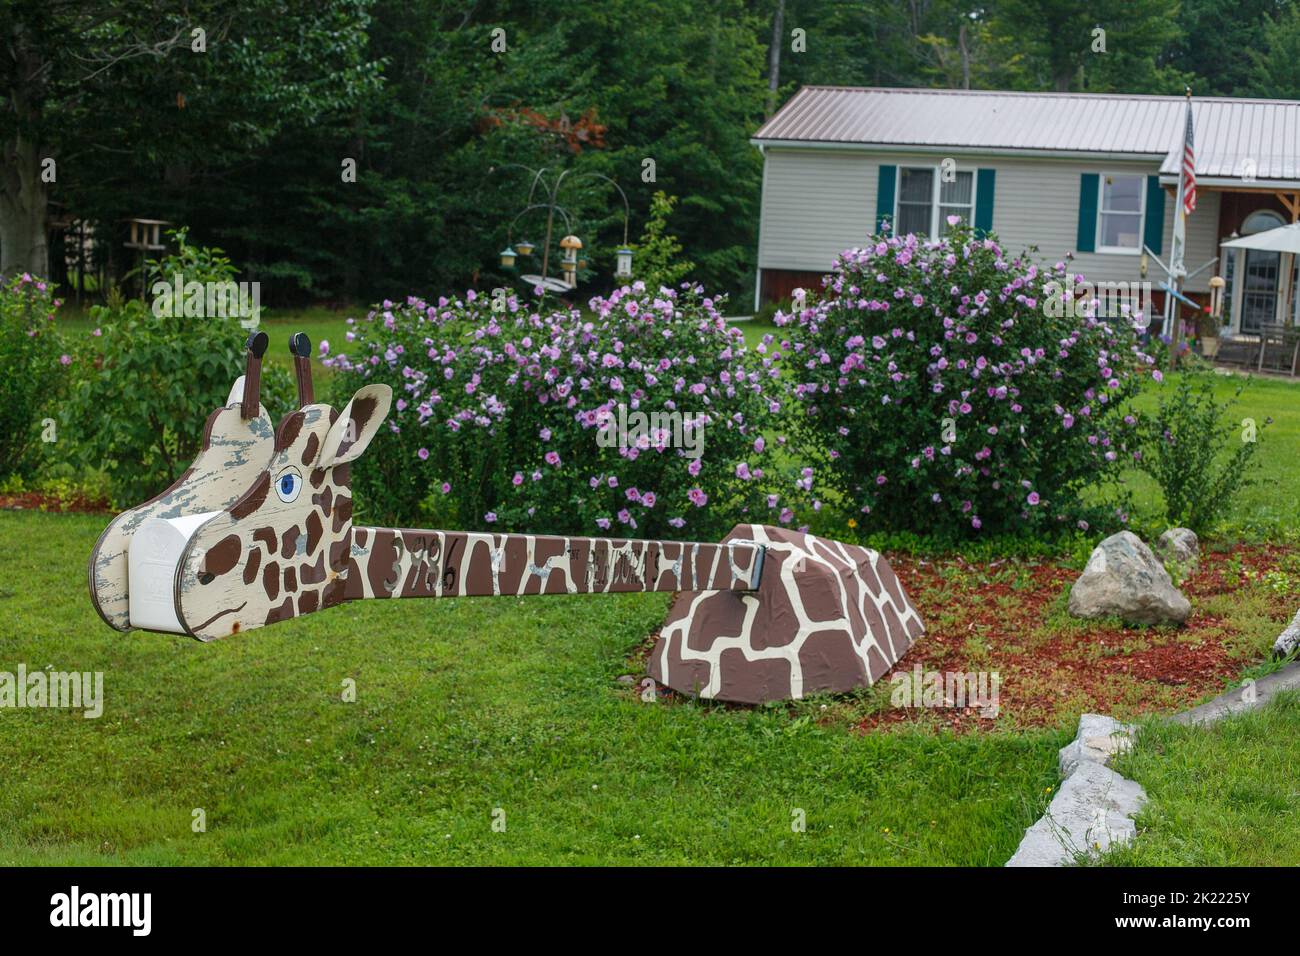 Un buzón de arte popular en forma de jirafa, cerca del lago Oneida, en el centro del estado de Nueva York, EE.UU. Foto de stock